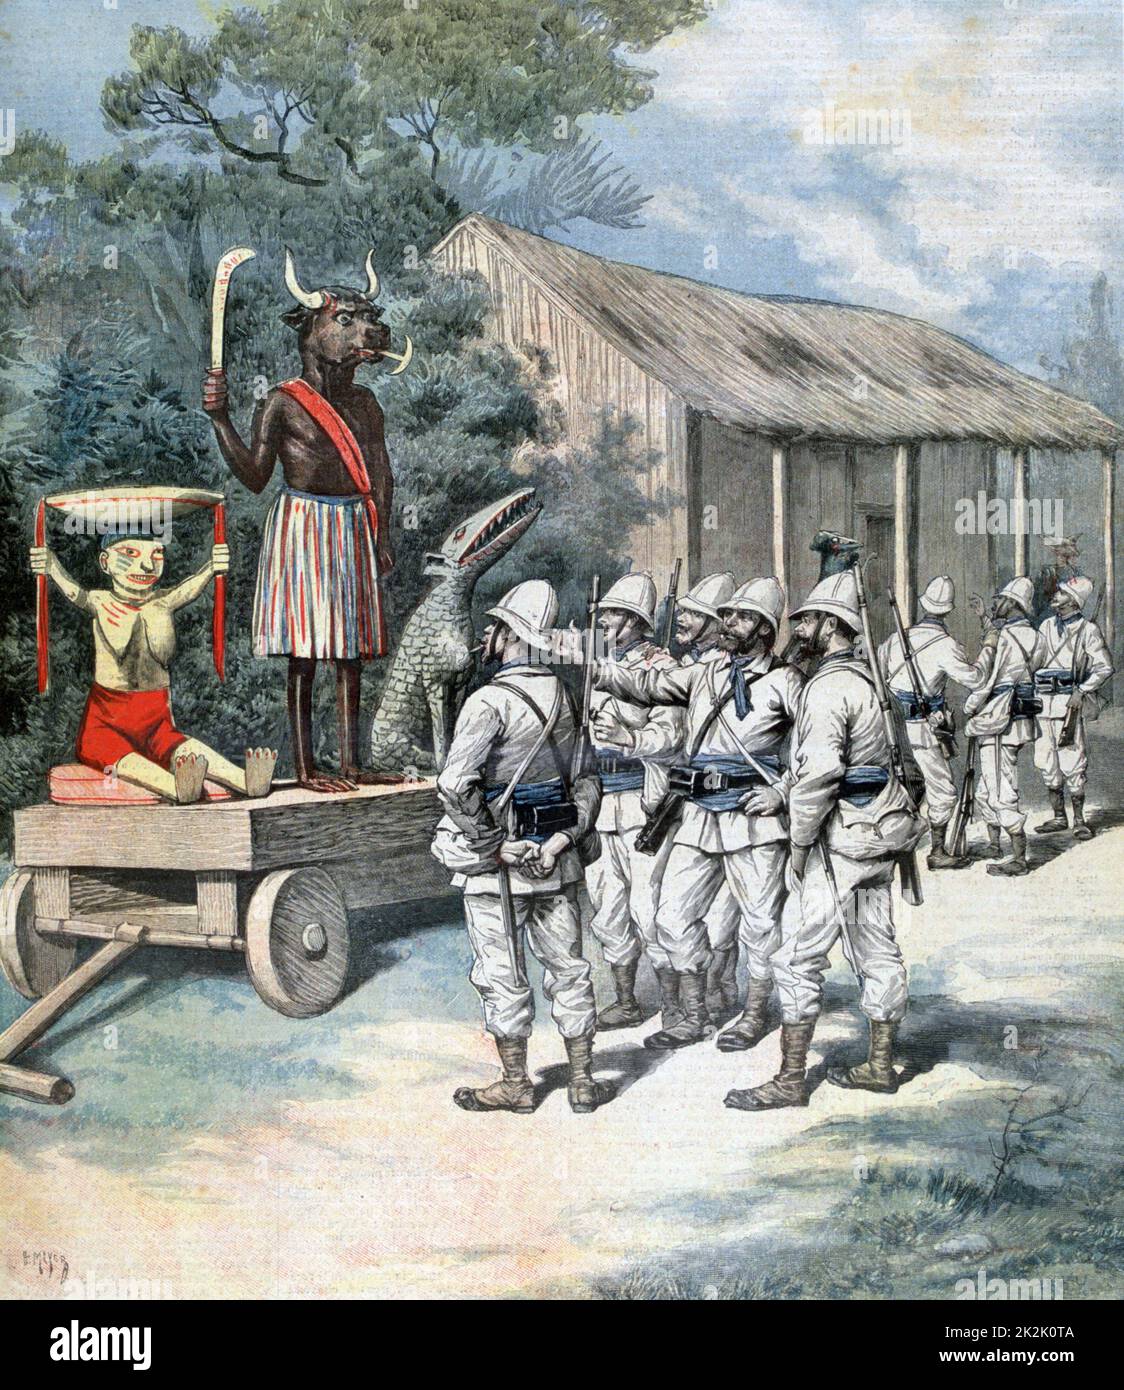 Zweiter Franco-Dahomean-Krieg 1892-1894: Idol des Dahomeanischen kriegsgottes, der von den Franzosen nach der Einnahme von Kanu gefangen genommen wurde. Aus Dem 'Le Petit Journal', Paris, 26. November 1892. Stockfoto